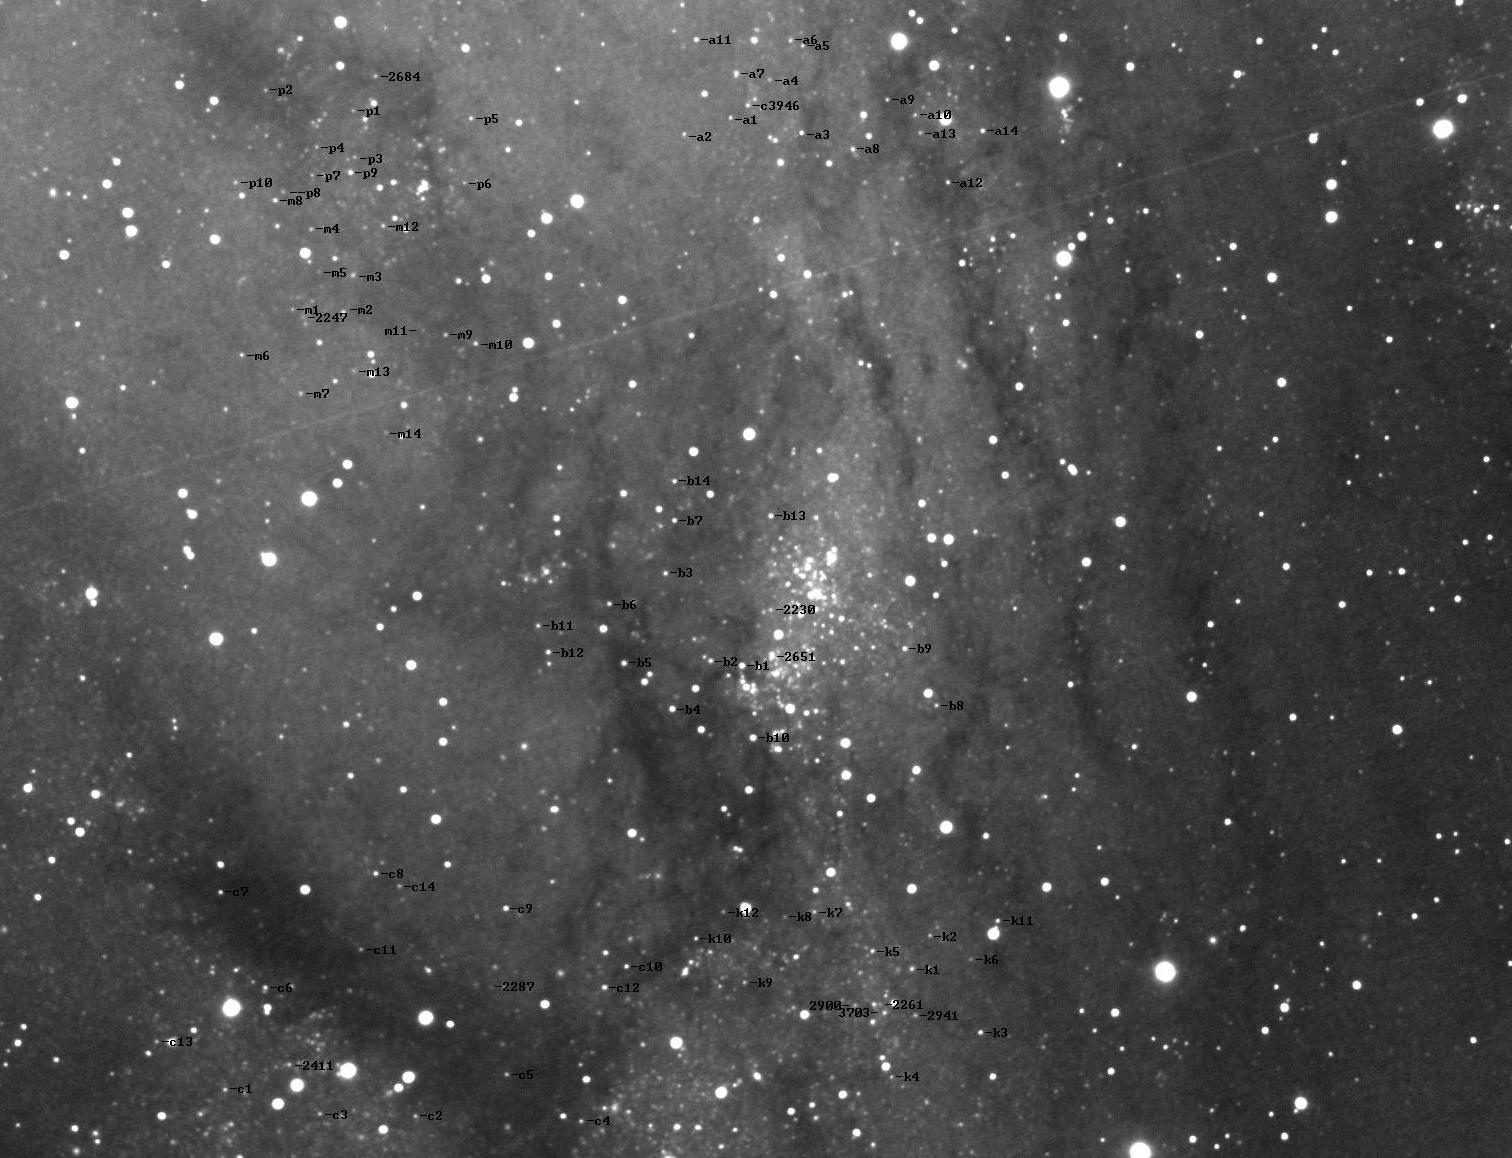 60a250f550a9e_CepheidesdeM31-NGC206.jpg.93a1833c214c56f1c150ea023e835b6c.jpg